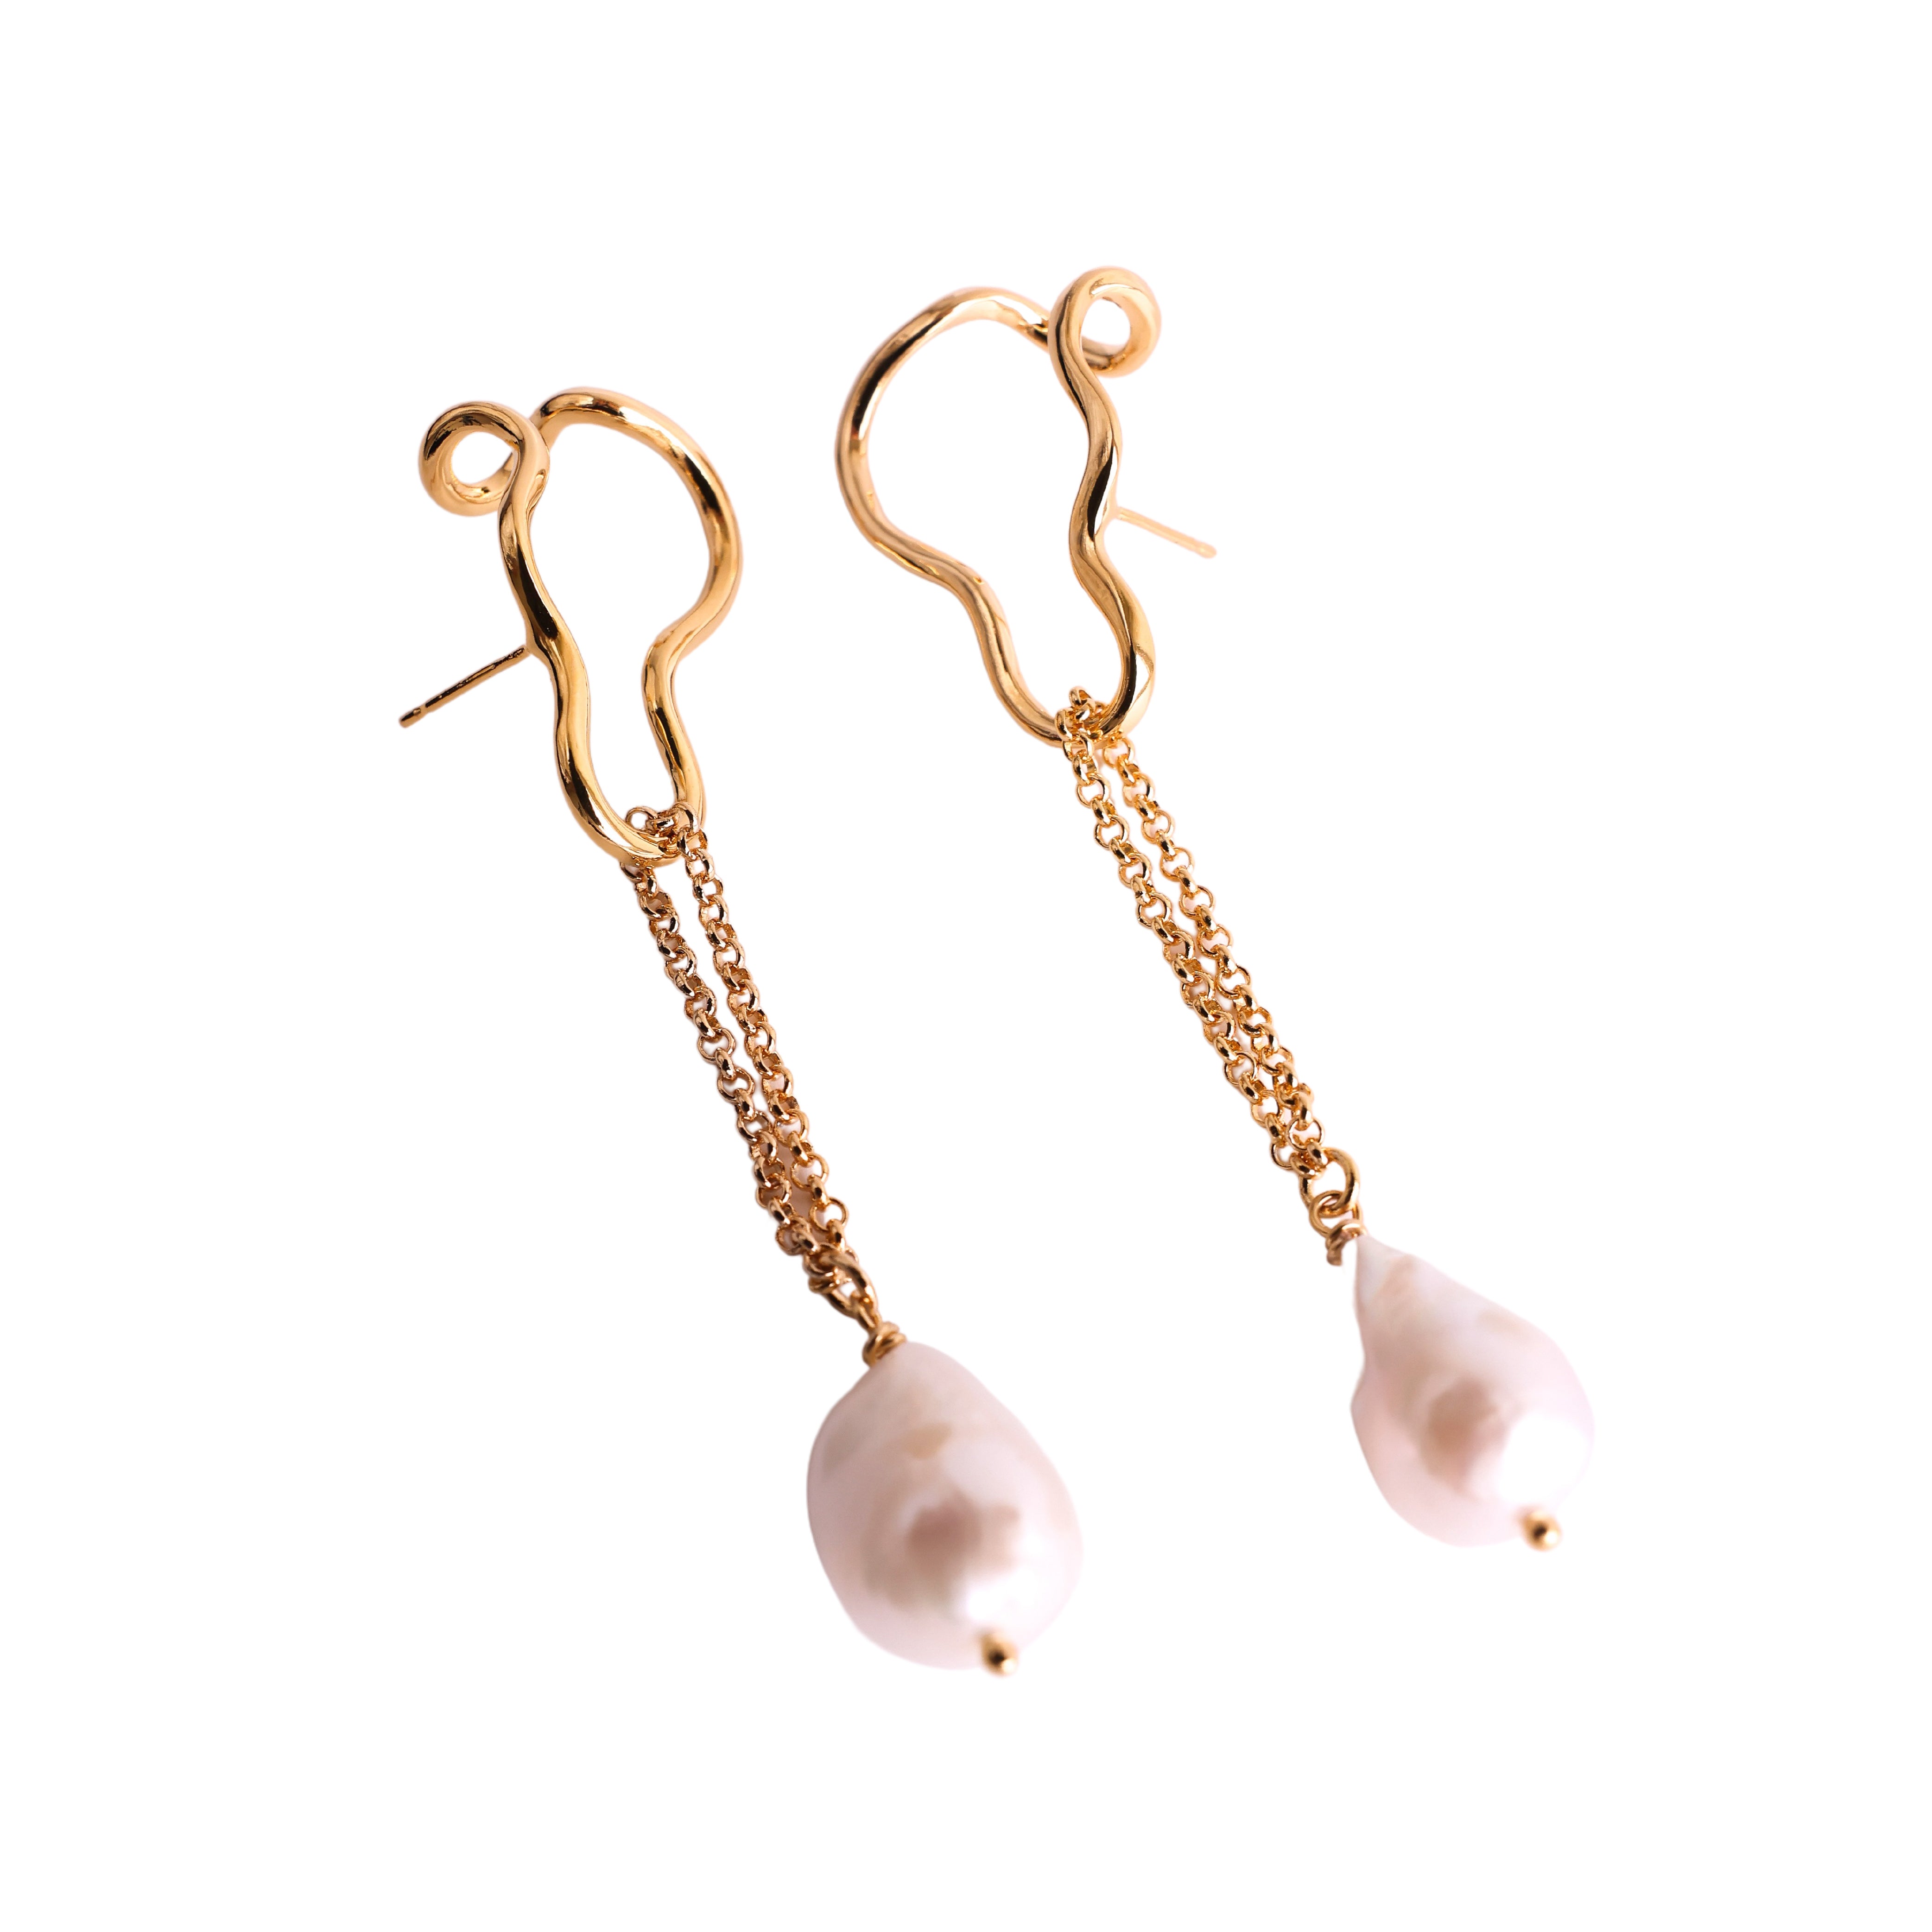 Nono pendientes con perlas barrocas · Earrings with barroque pearls